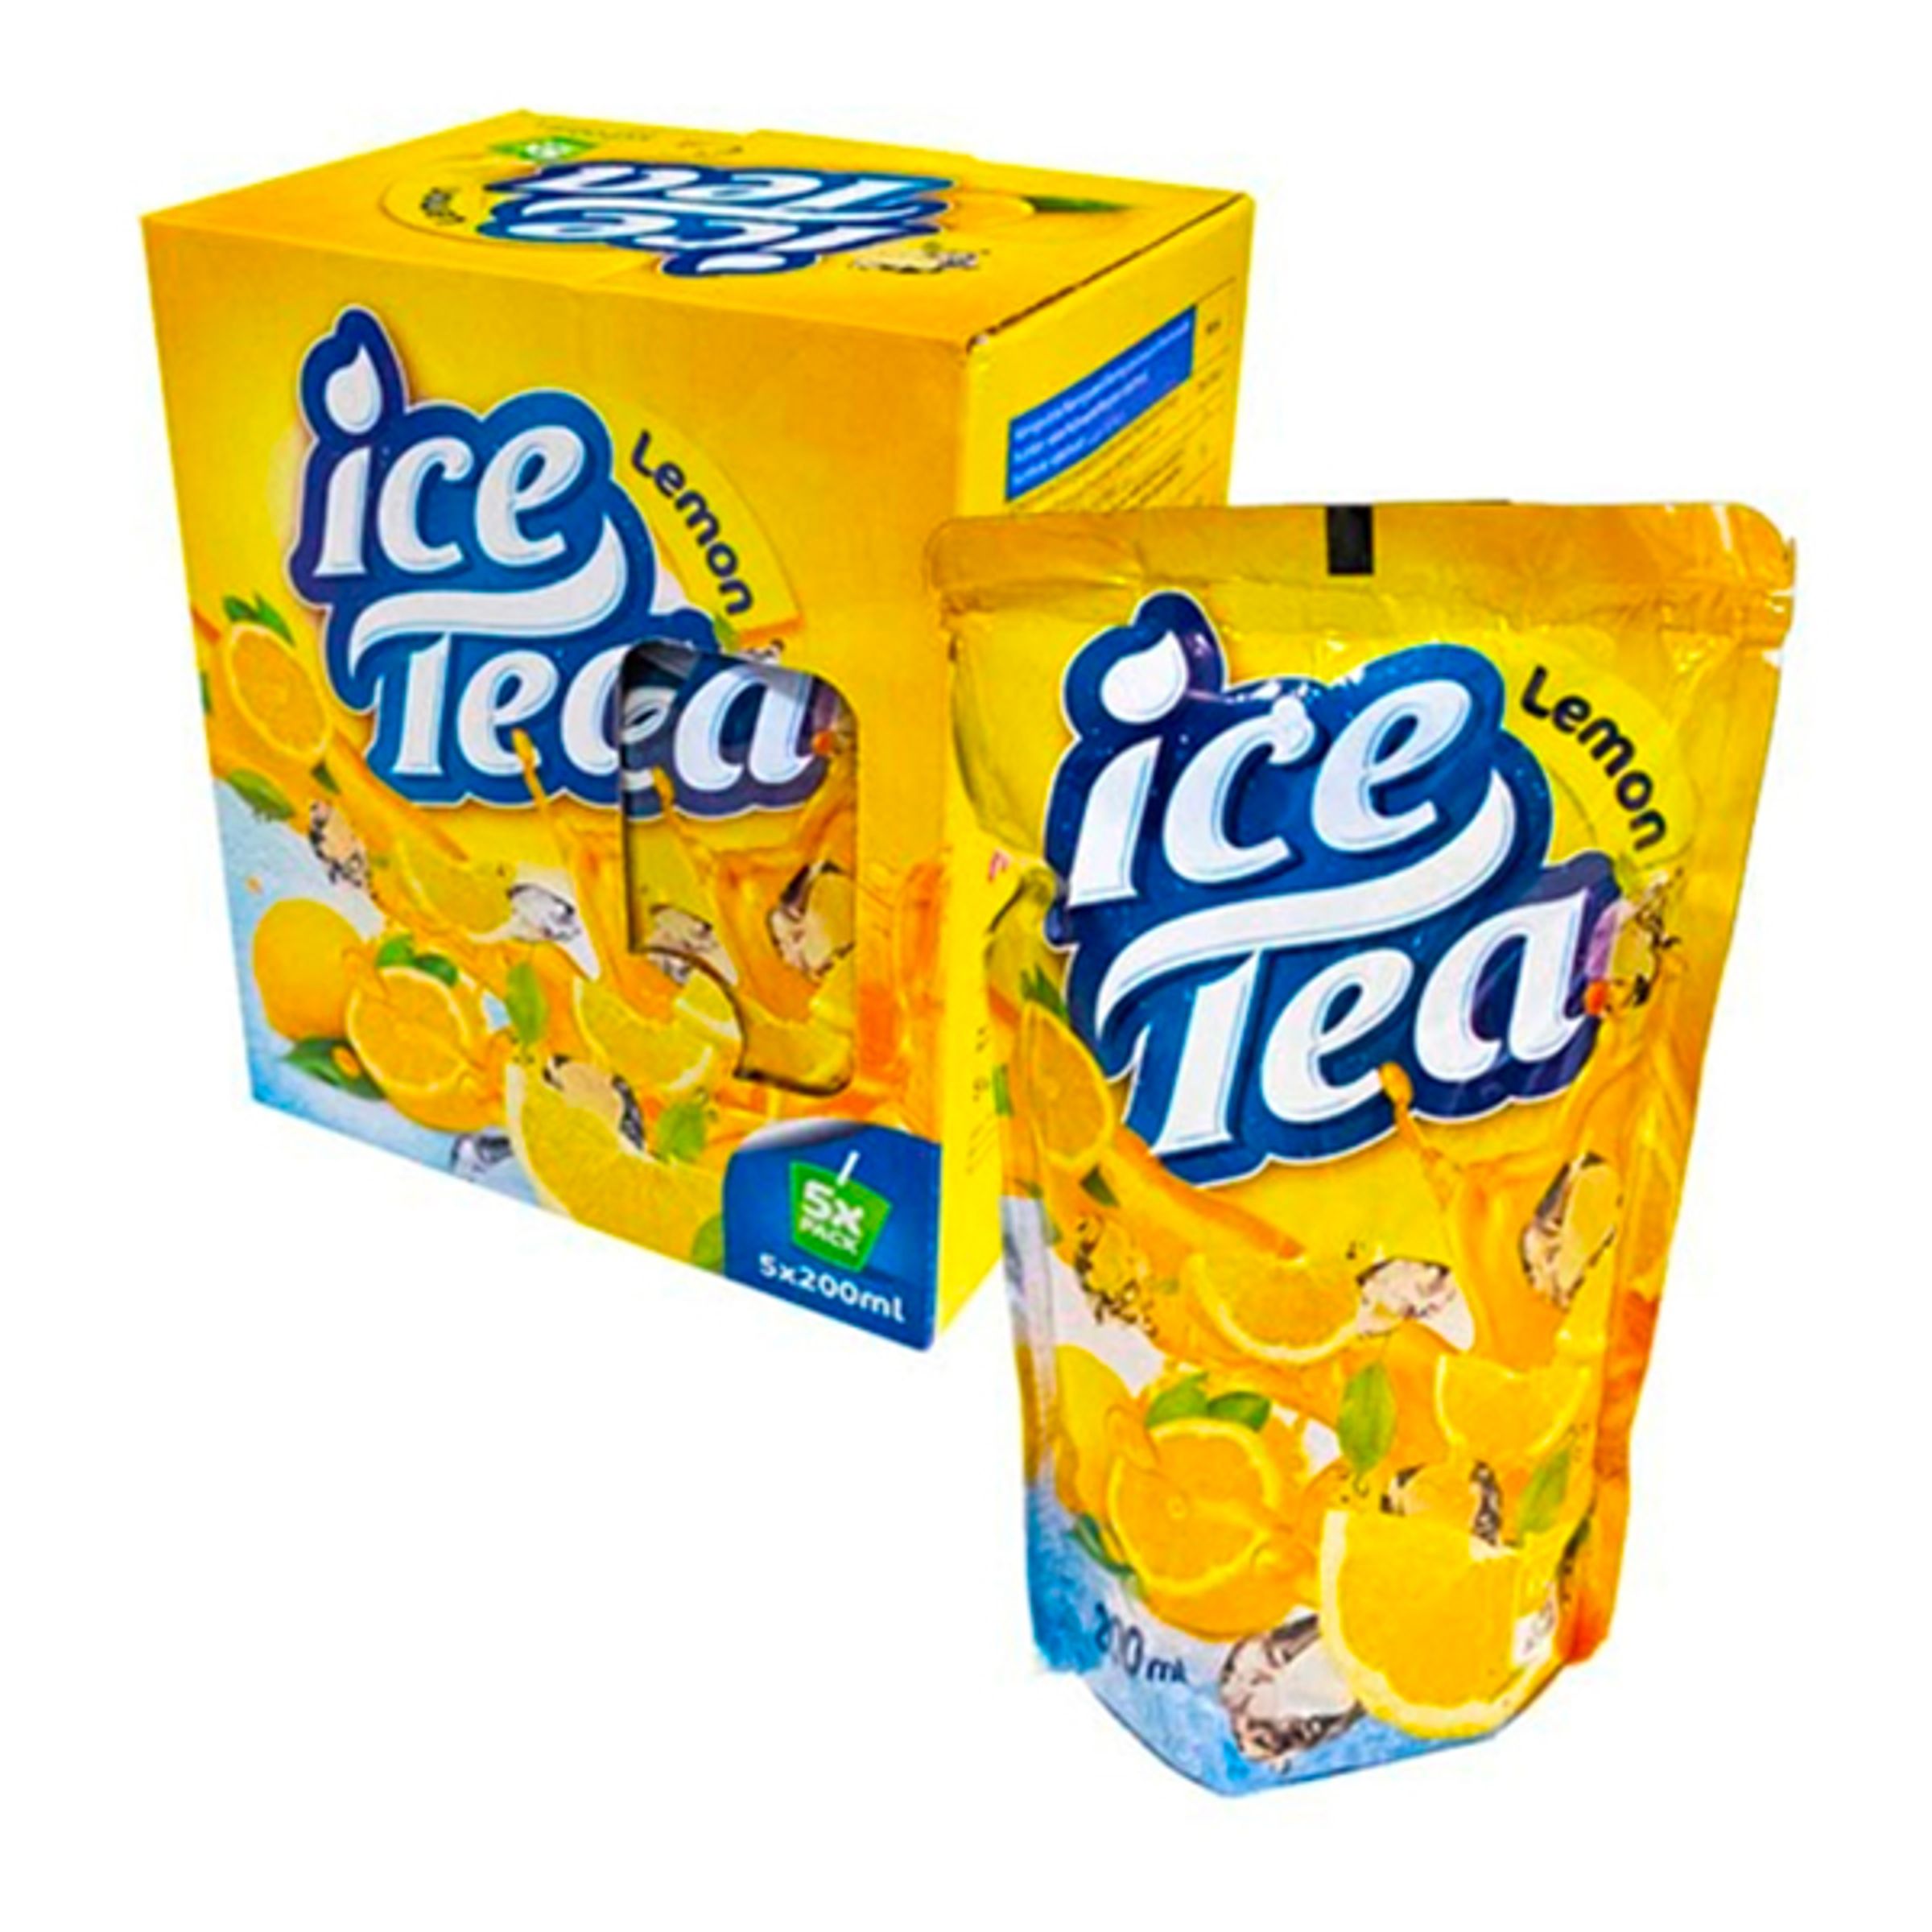 Ice Tea Lemon Tetra - 5-pack